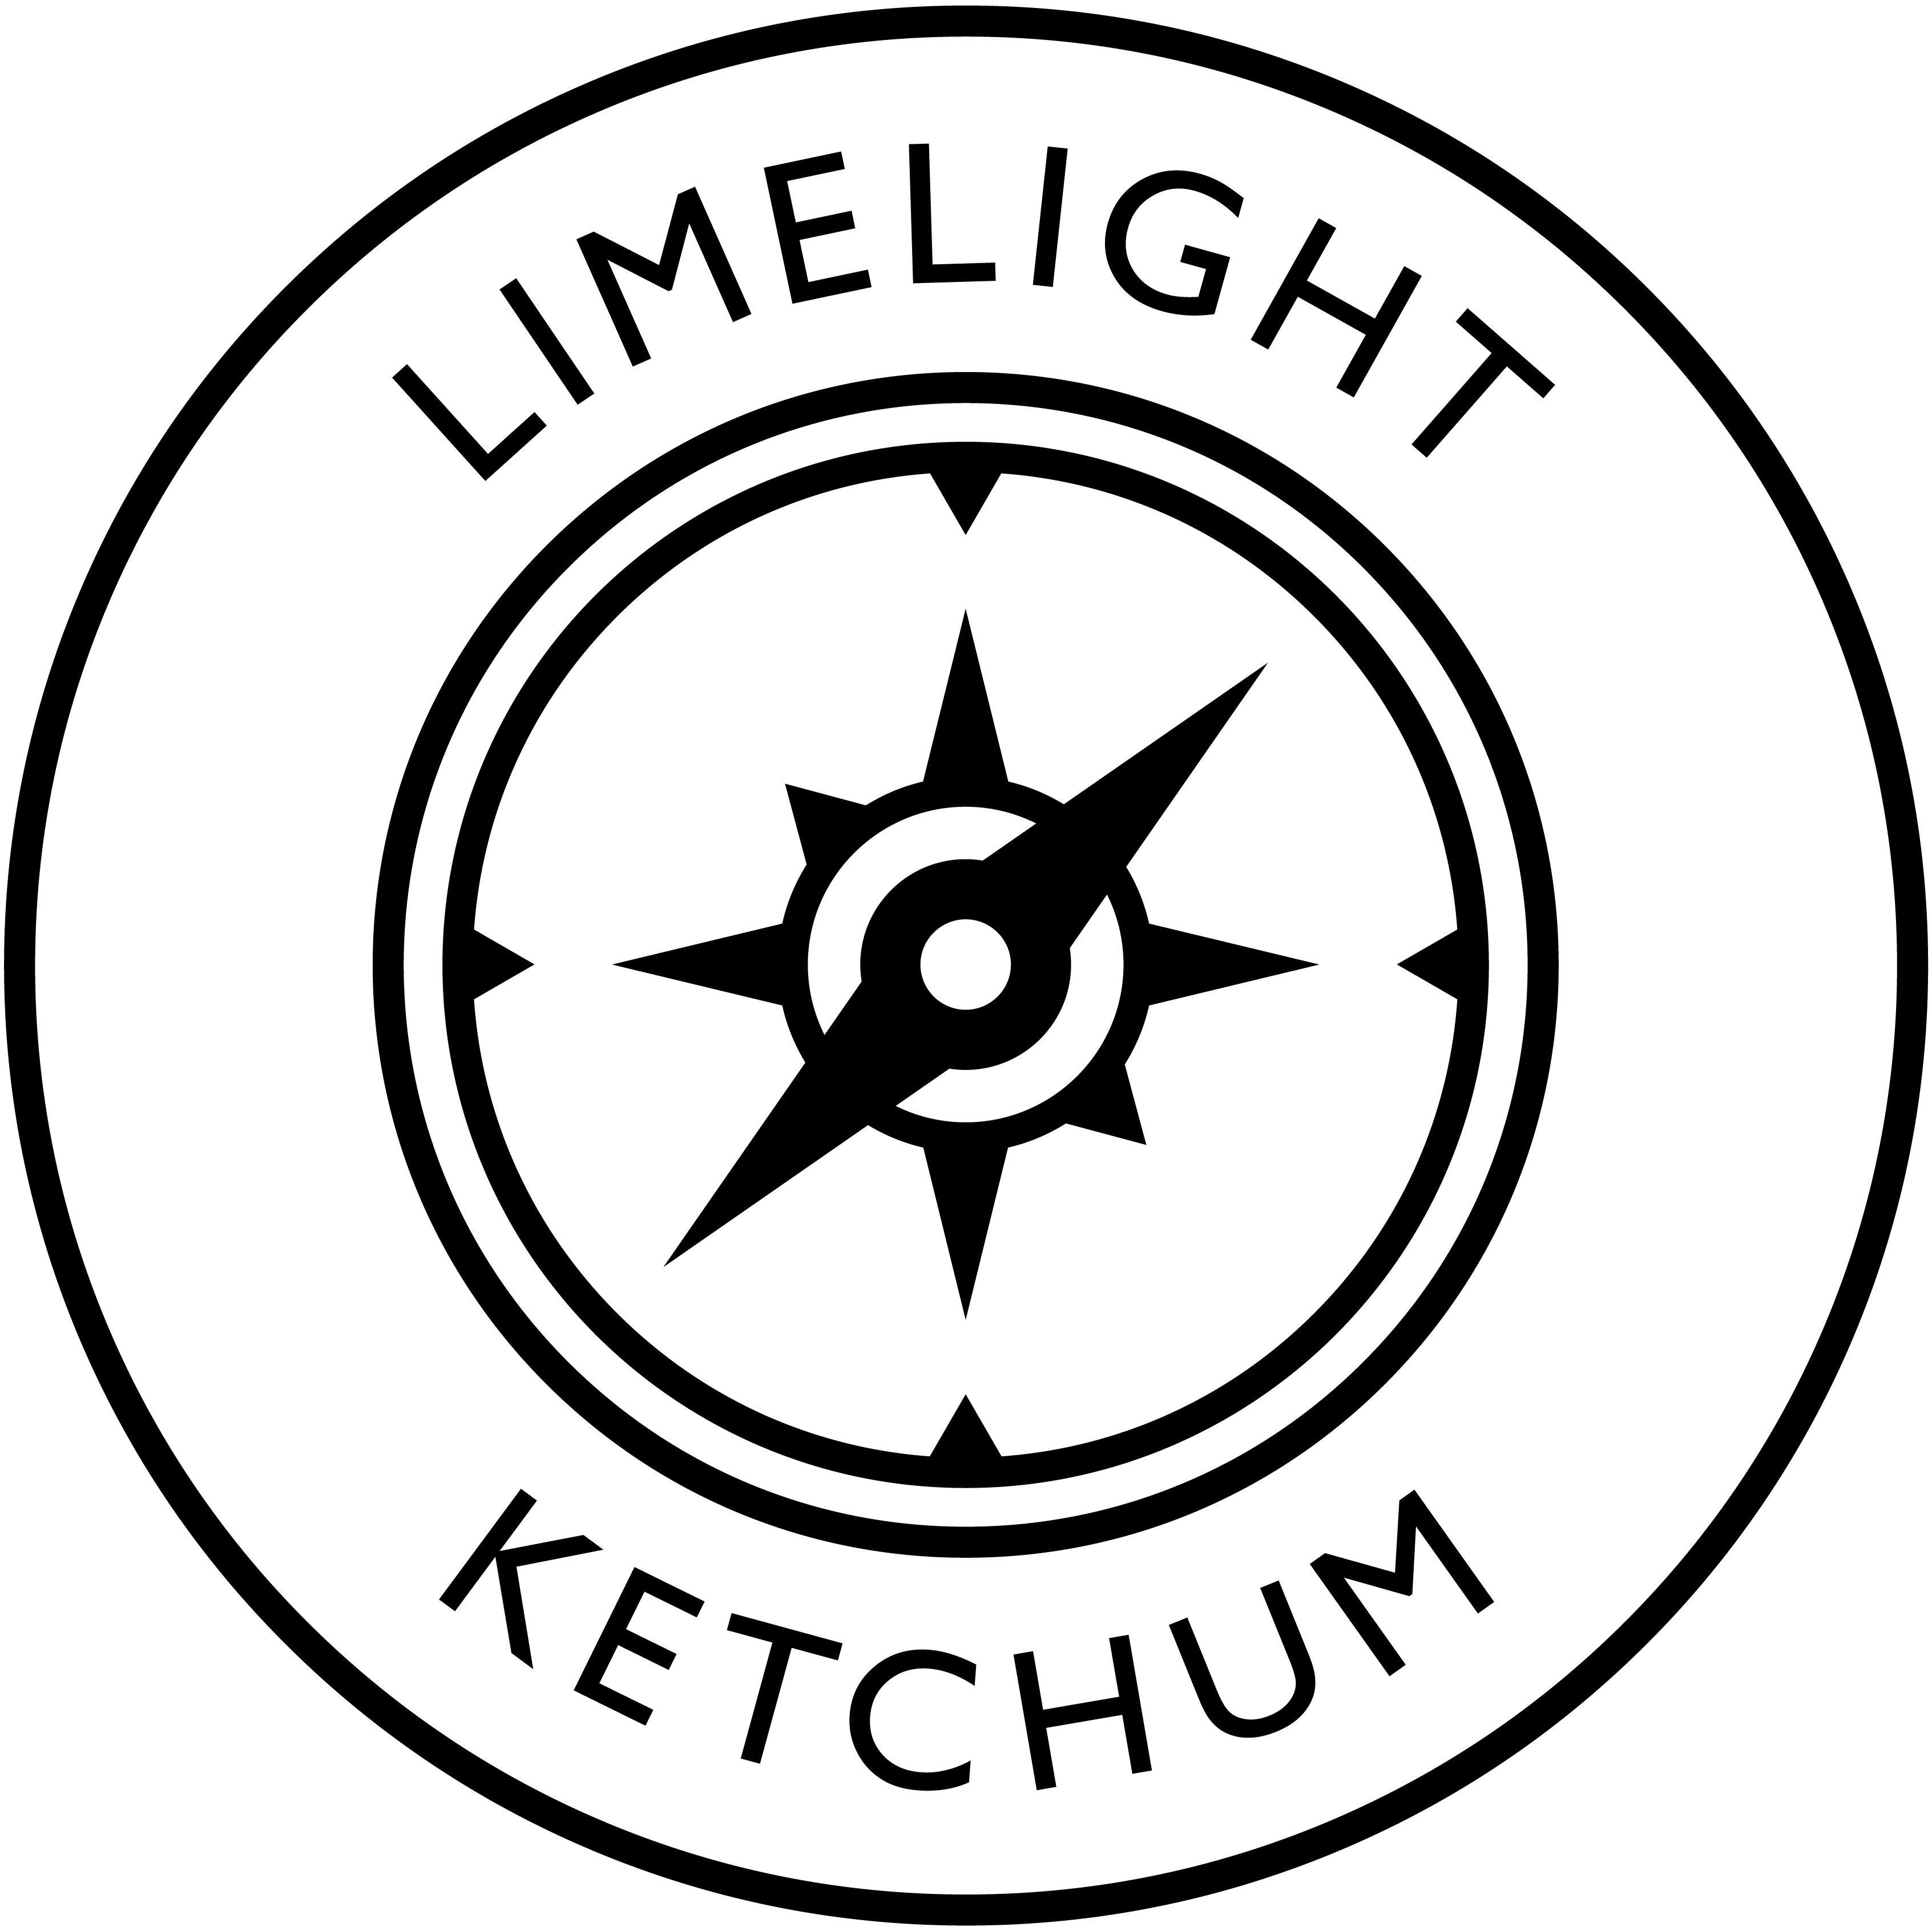 Limelight Ketchum Compass Logo